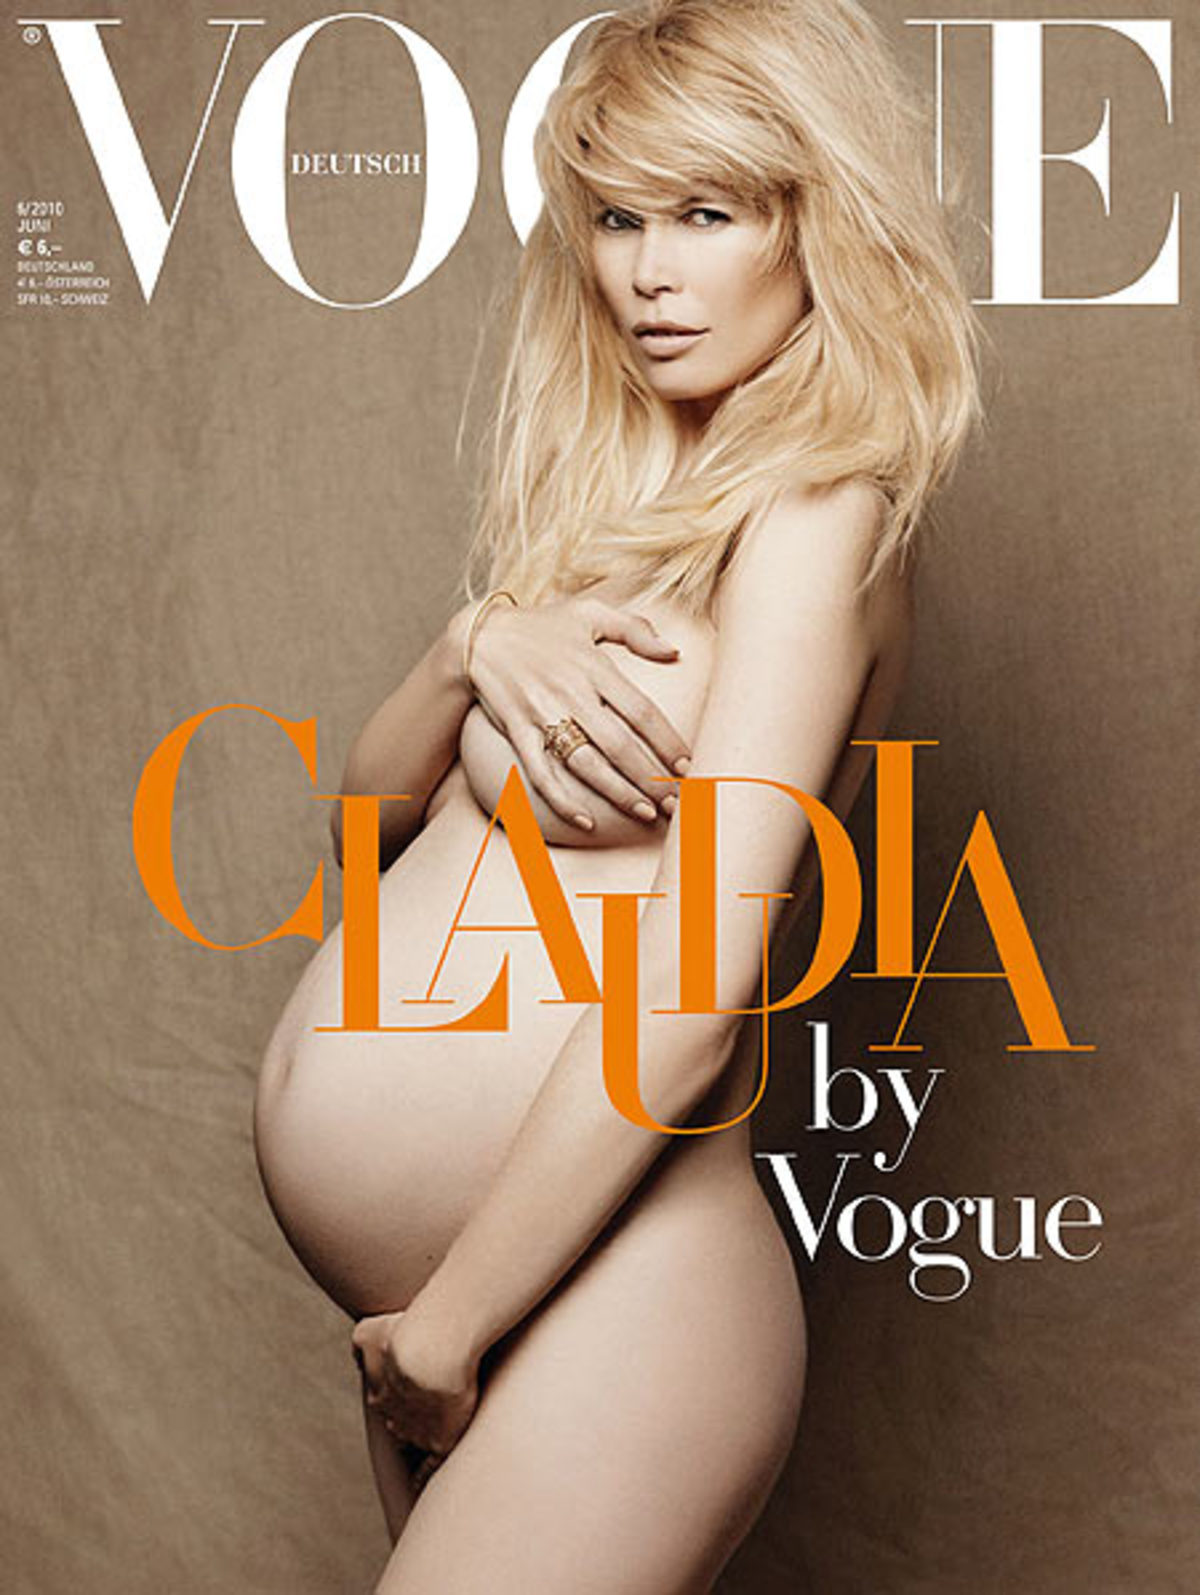 Η έγκυος Claudia Schiffer έκανε γυμνή φωτογράφηση!